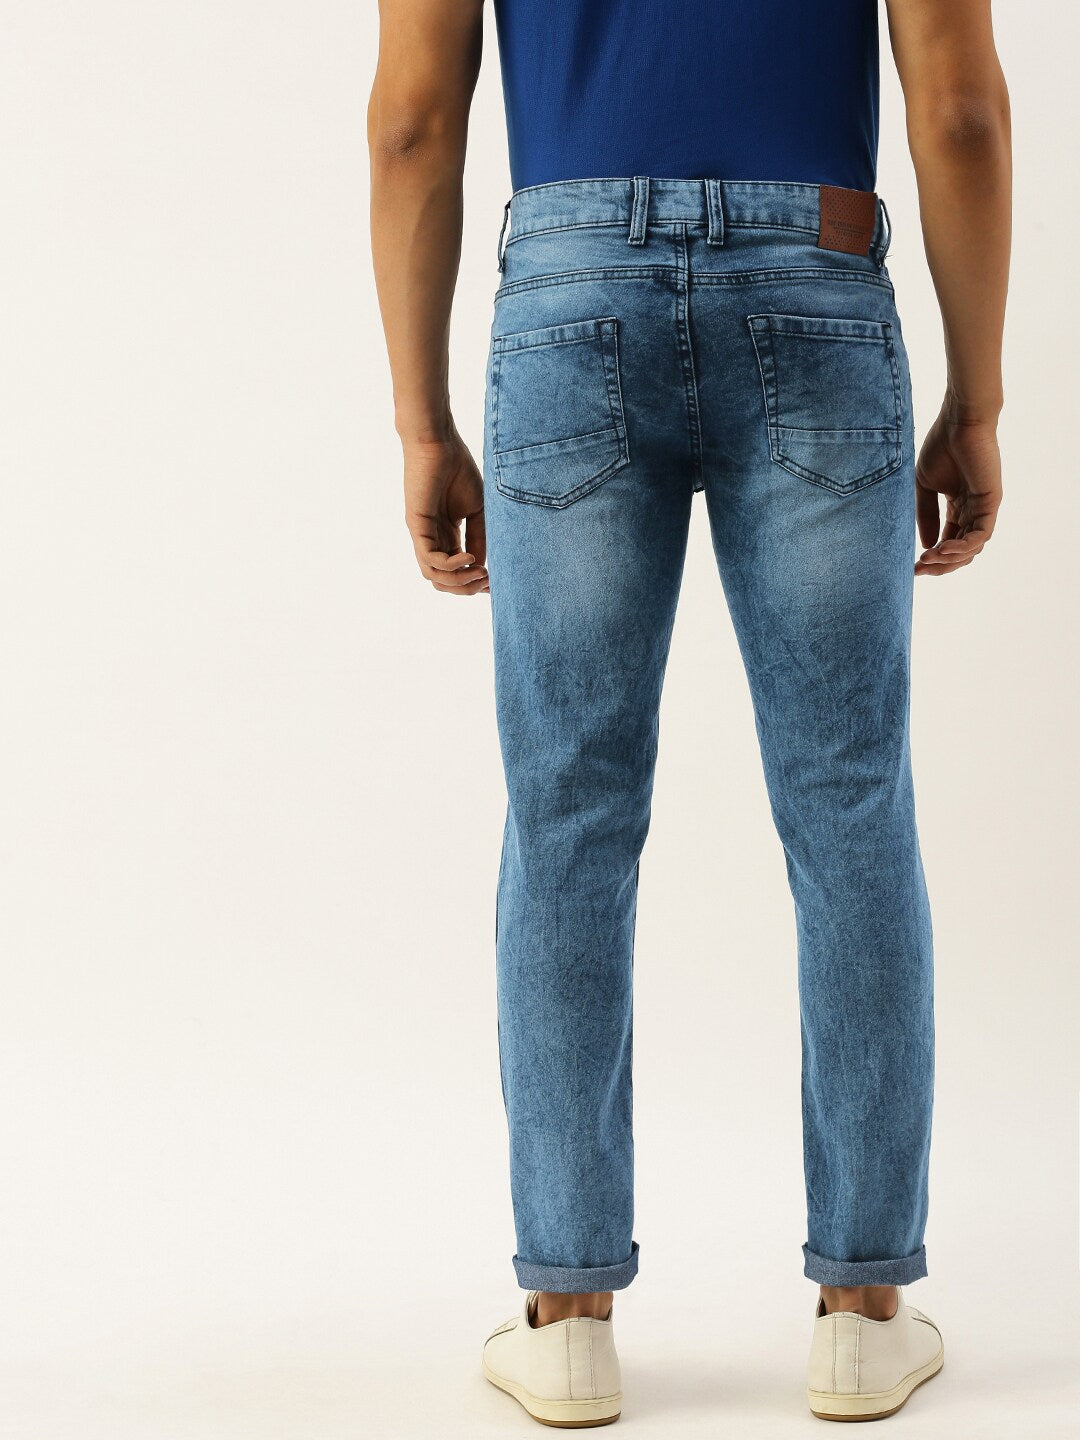 Shop Men Regular Jeans Online.